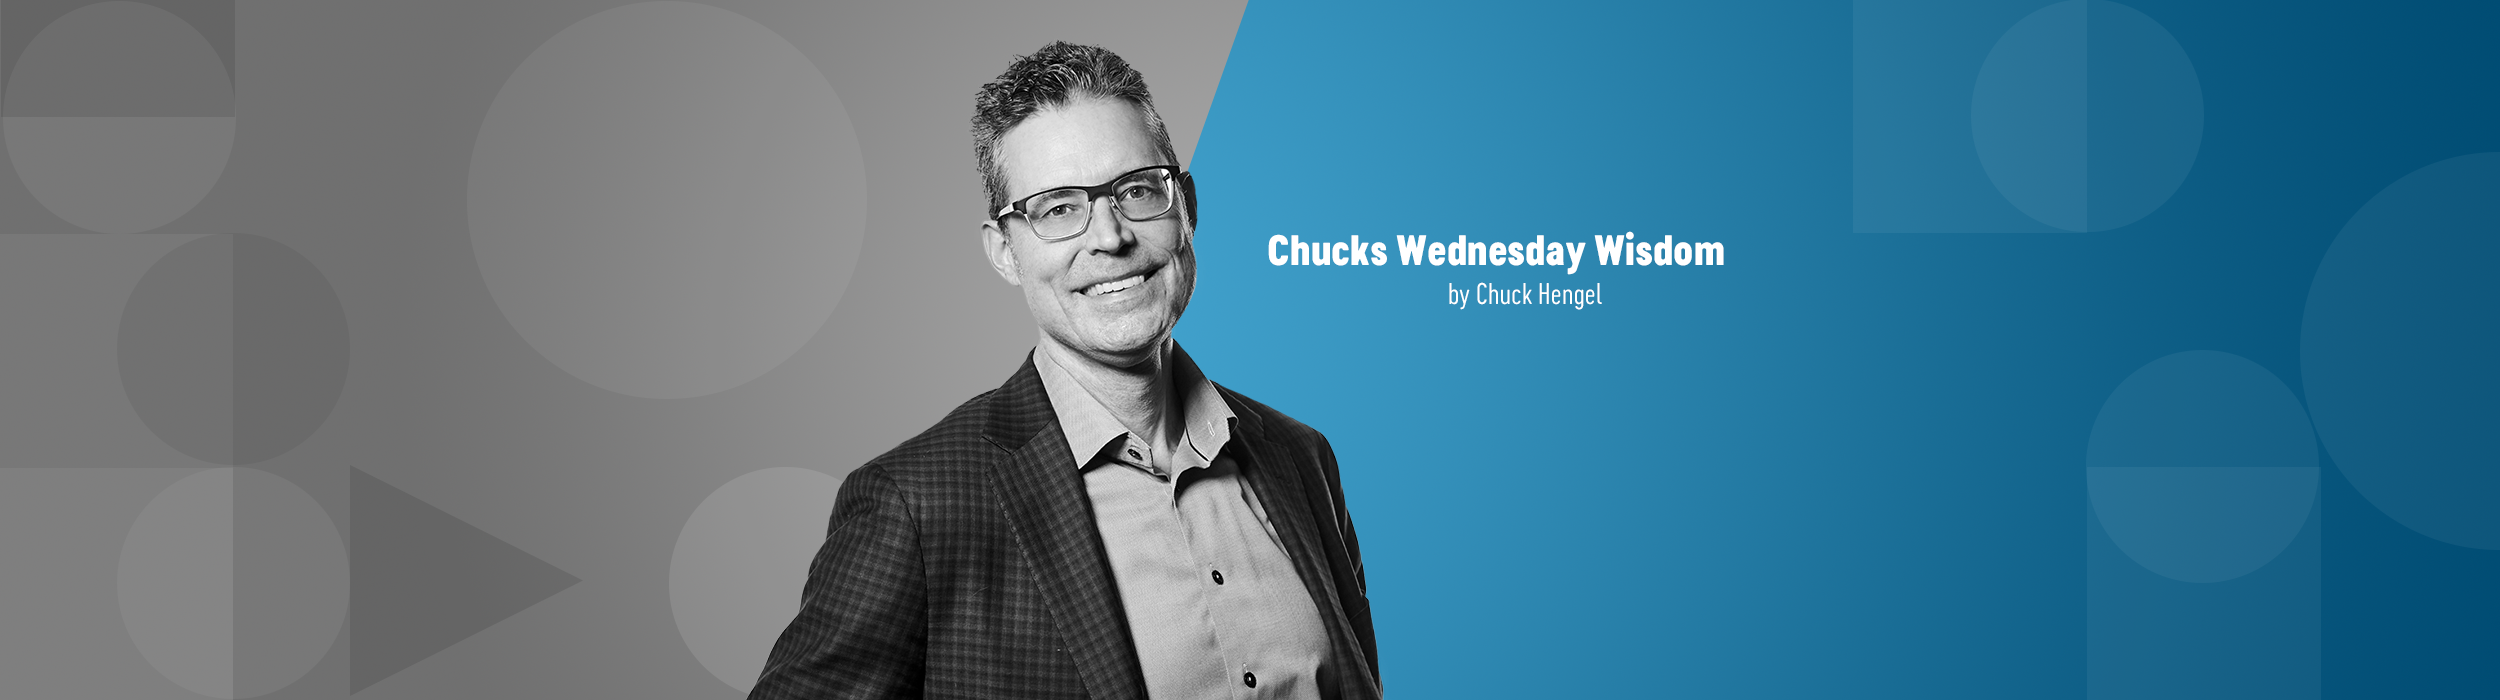 Chuck's Wednesday Wisdom: 2018 wrap-up